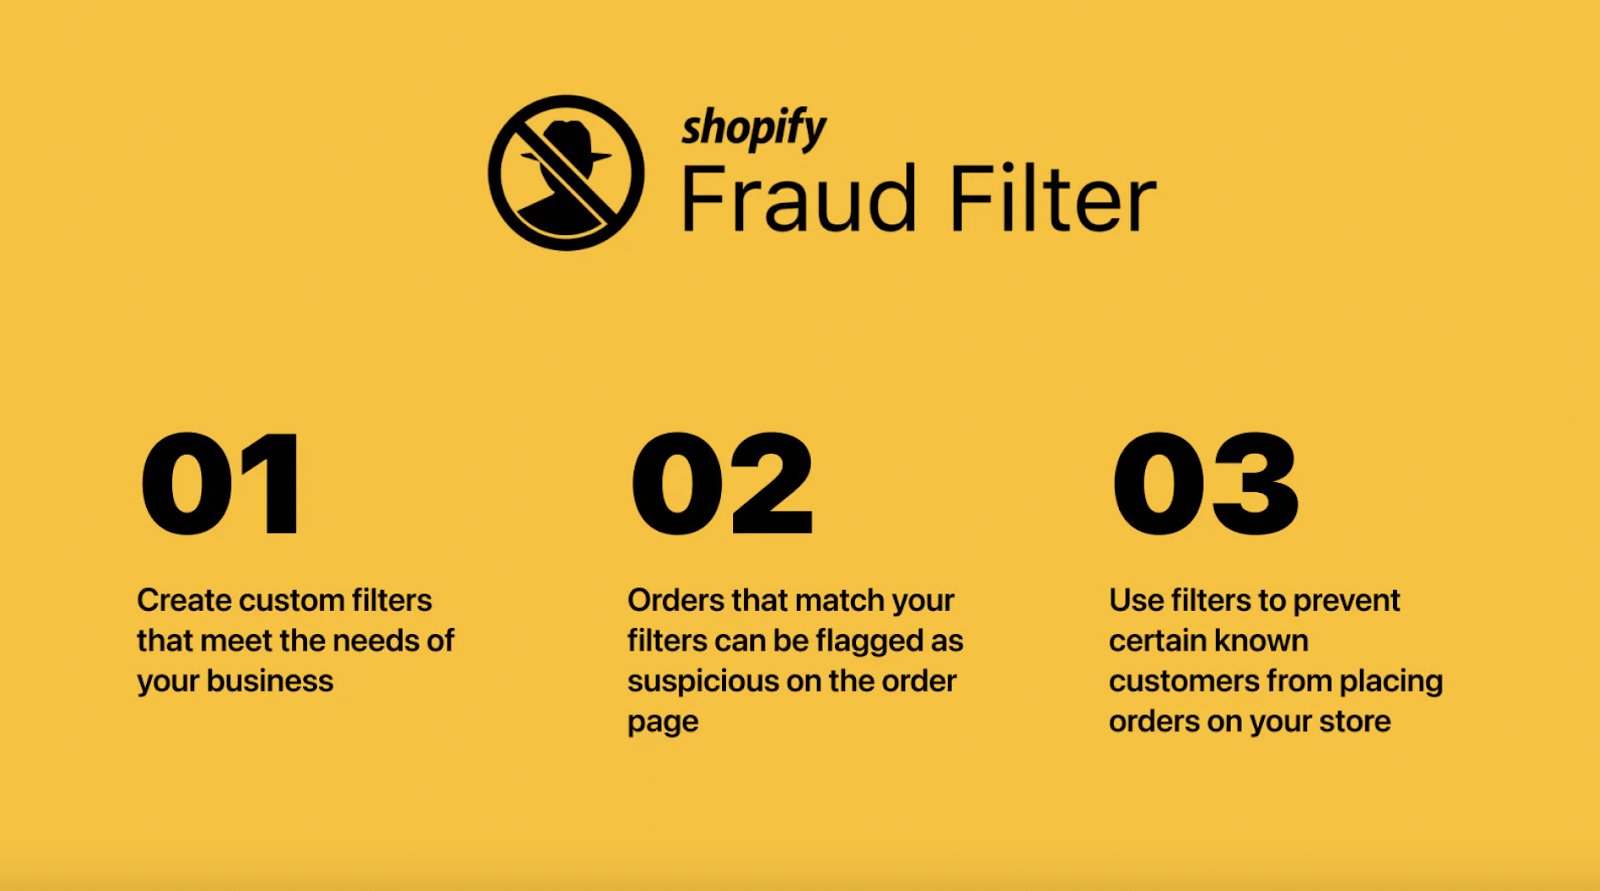 FraudFilter app